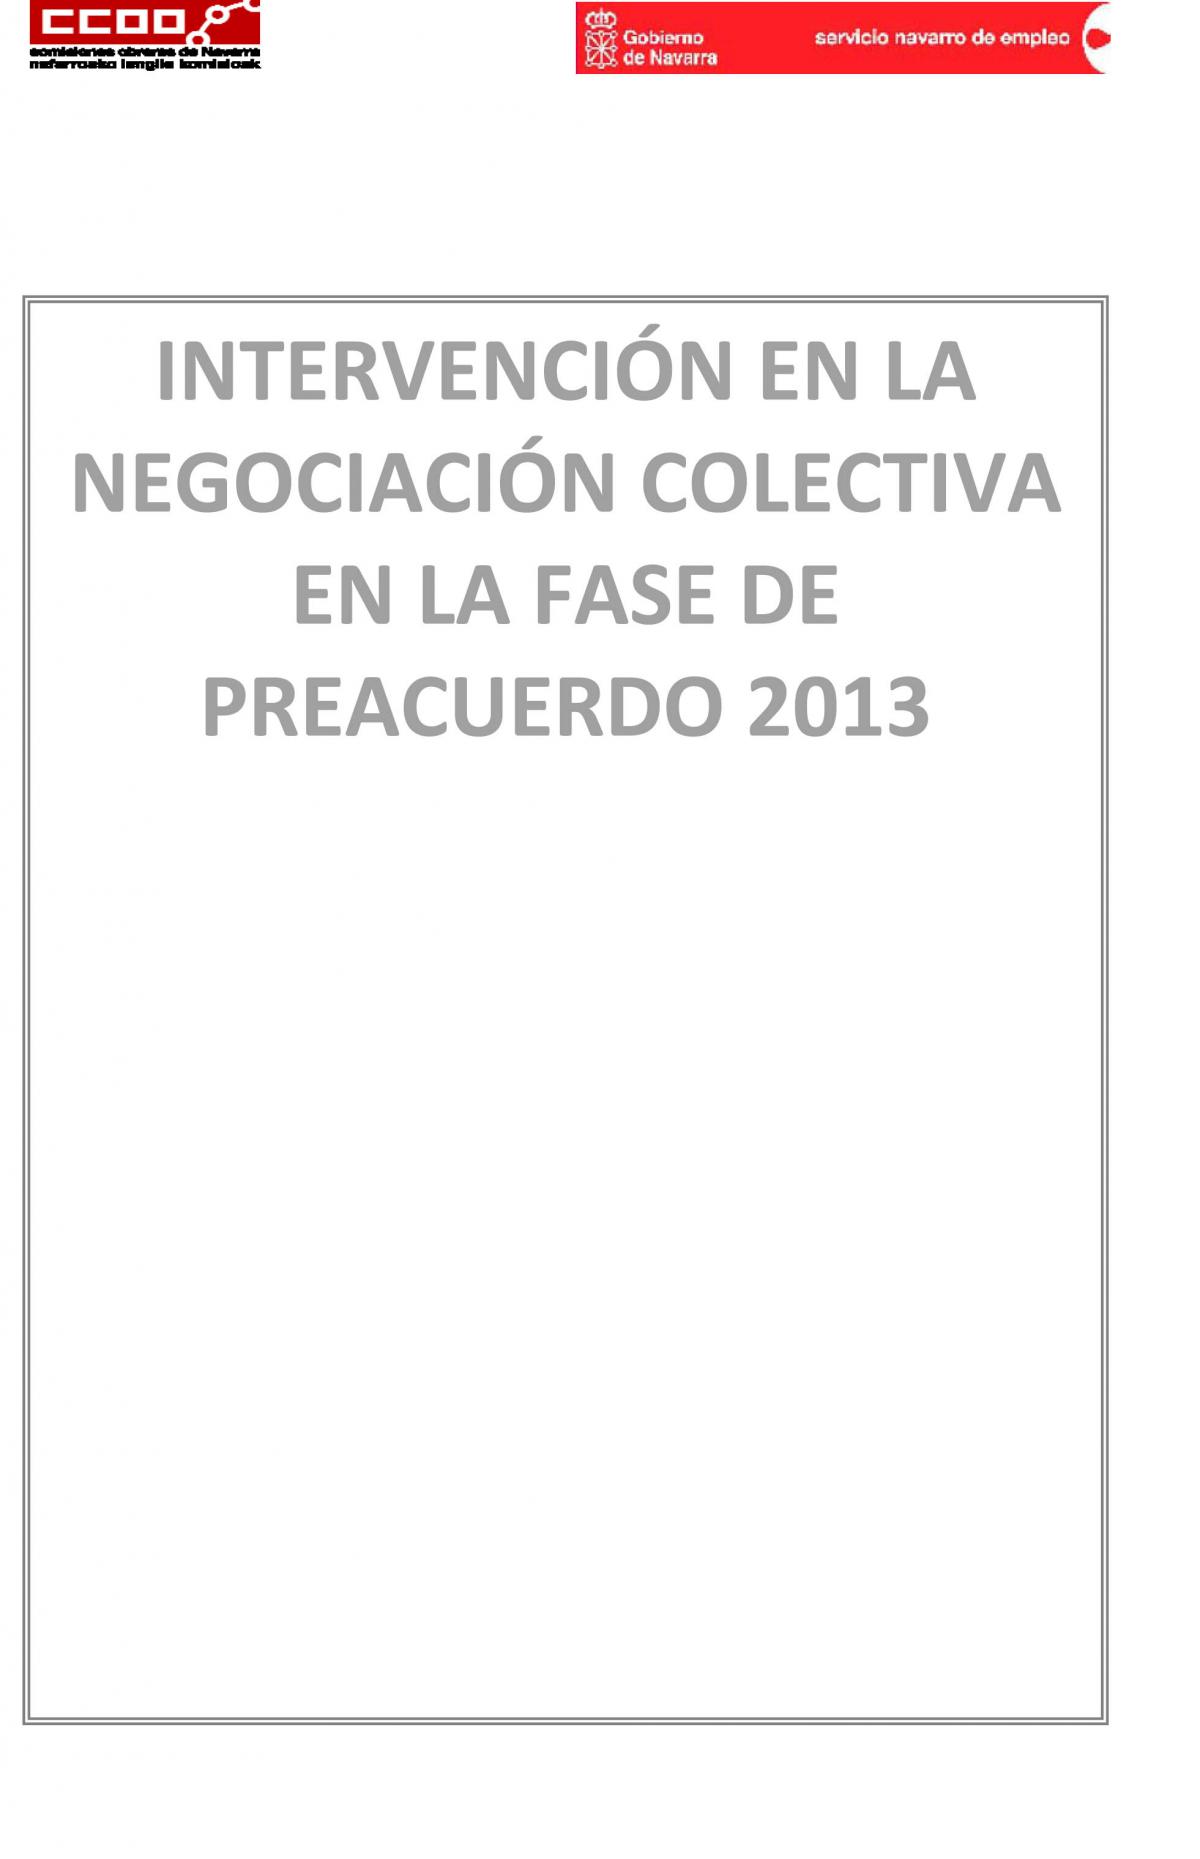 Intervención en la negociación colectiva en la fase de preacuerdo 2013